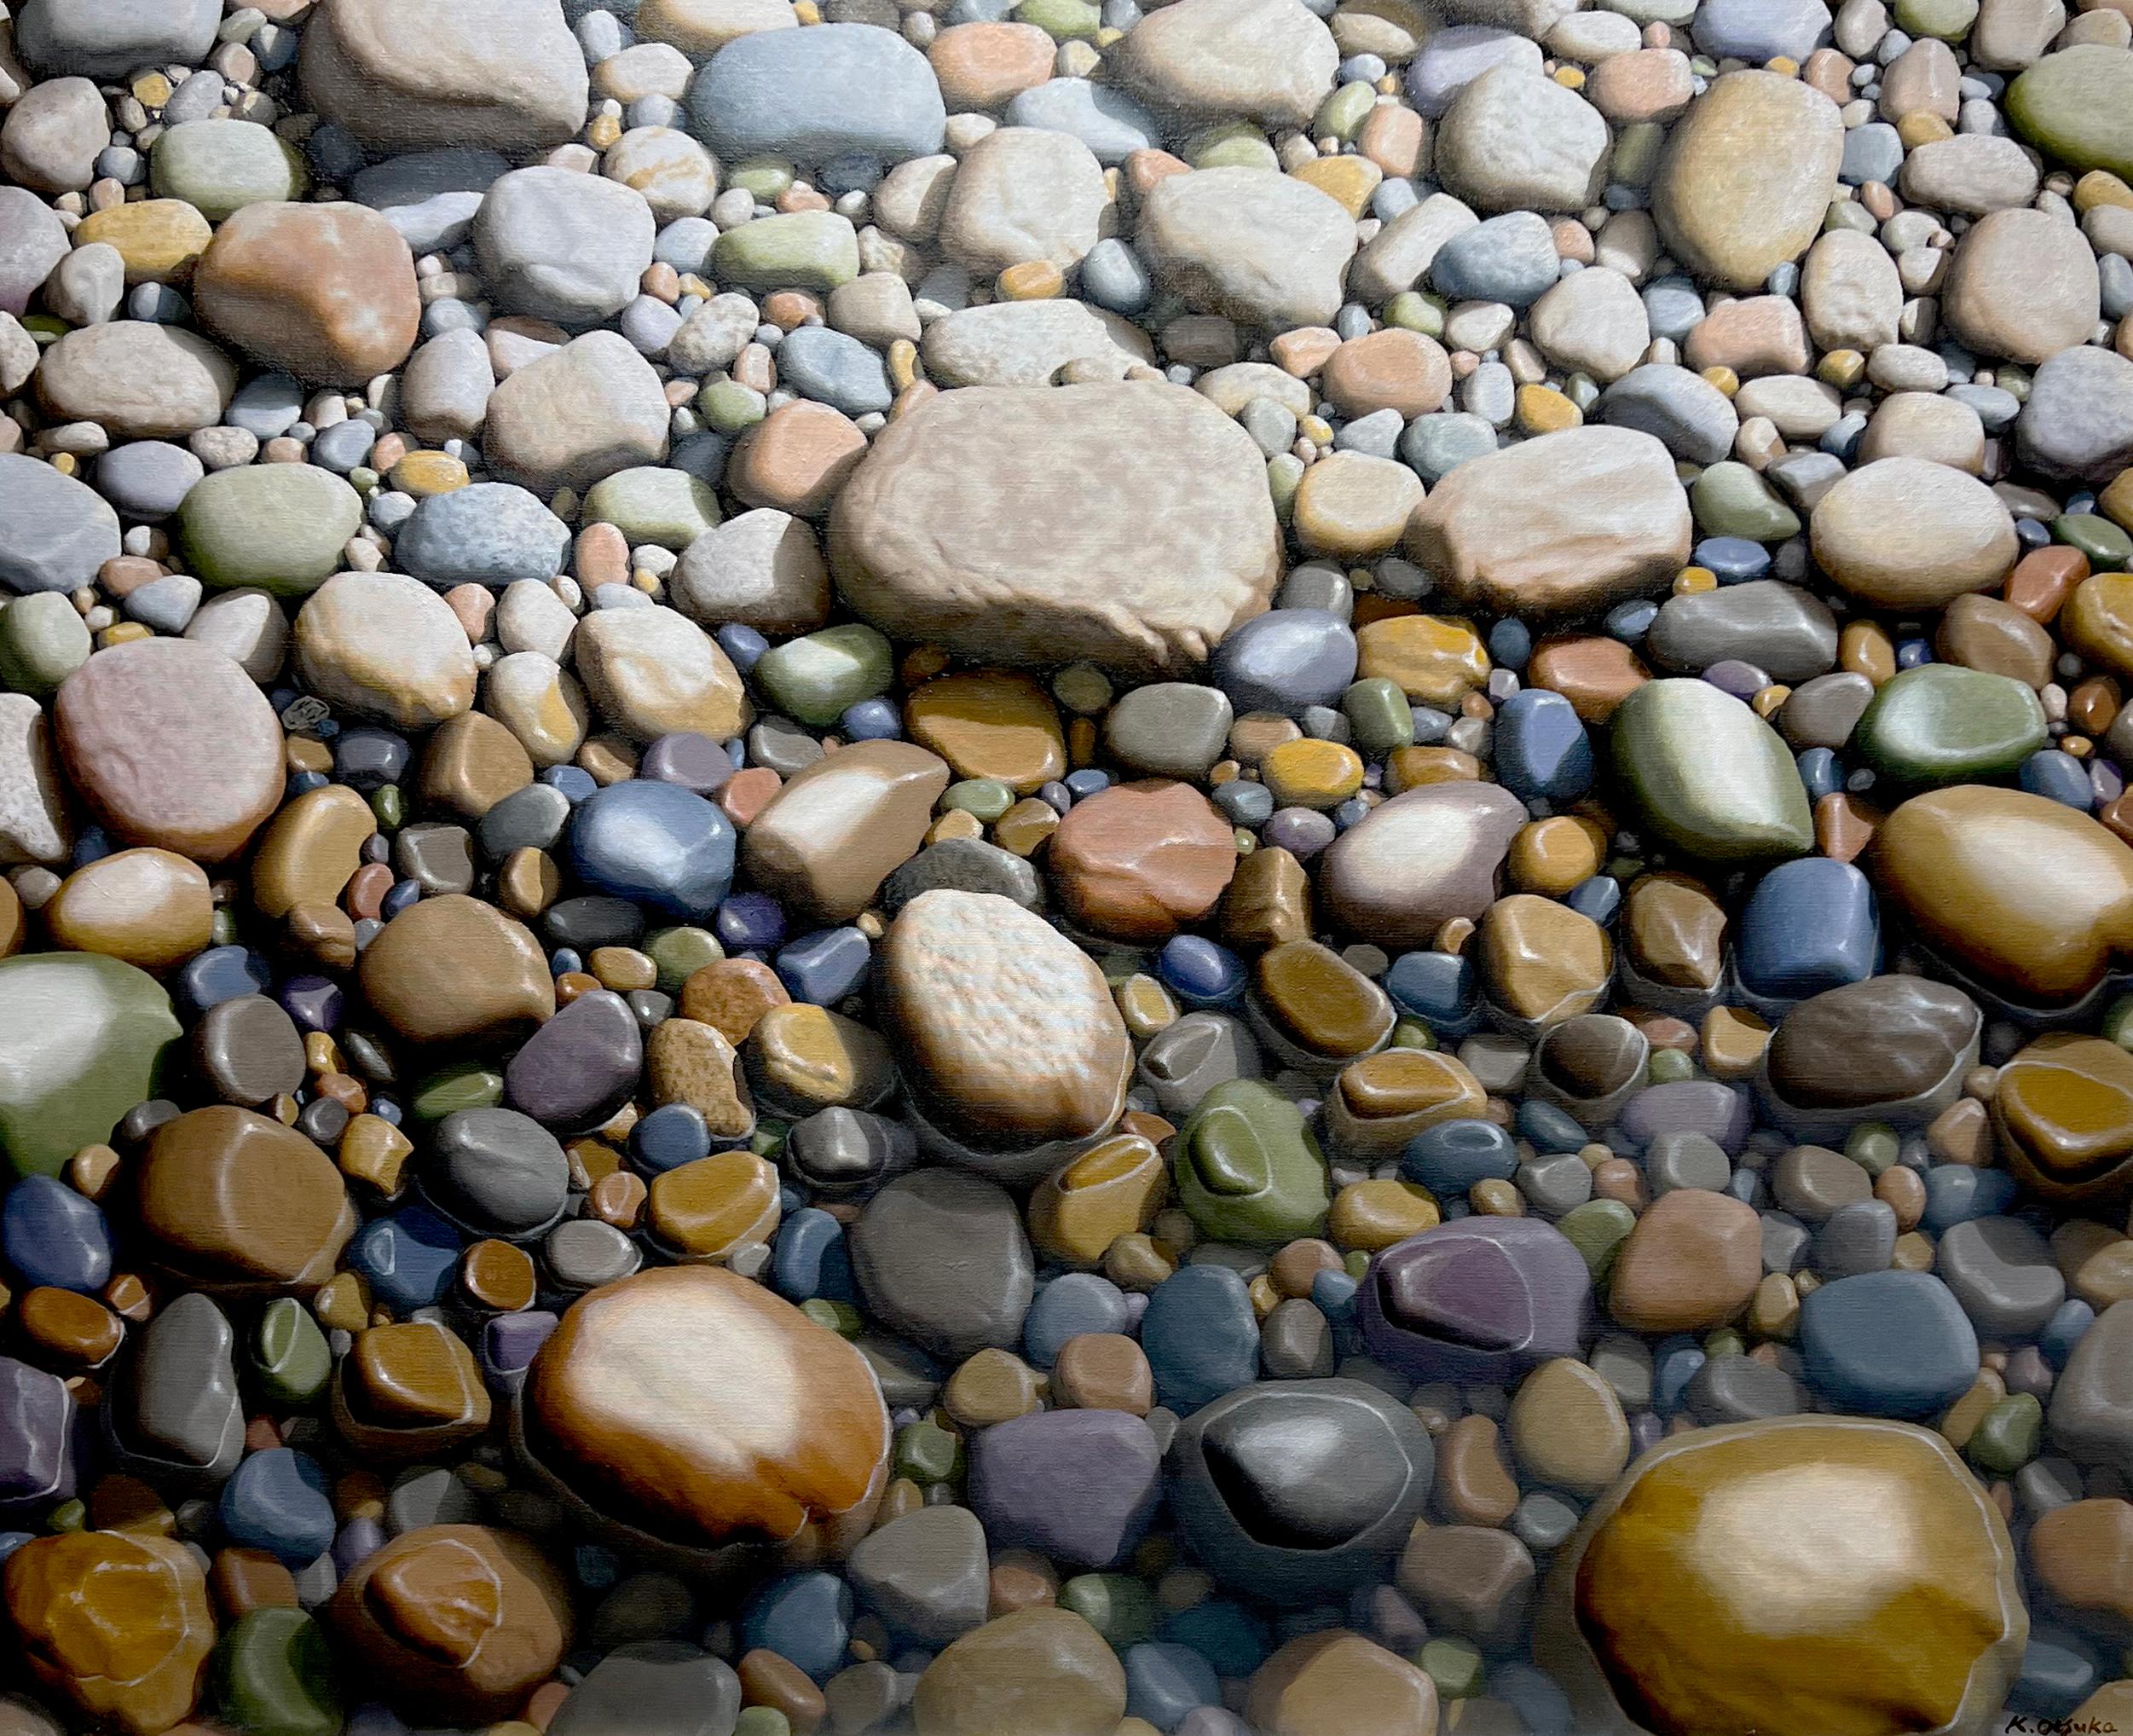 Cette œuvre sereine, "Quiet Conversation", est une peinture à l'huile sur toile de 38x46 réalisée par l'artiste Ken Otsuka. Elle présente une perspective unique, avec une vue directe sur une plage couverte de galets.  Des centaines de roches et de